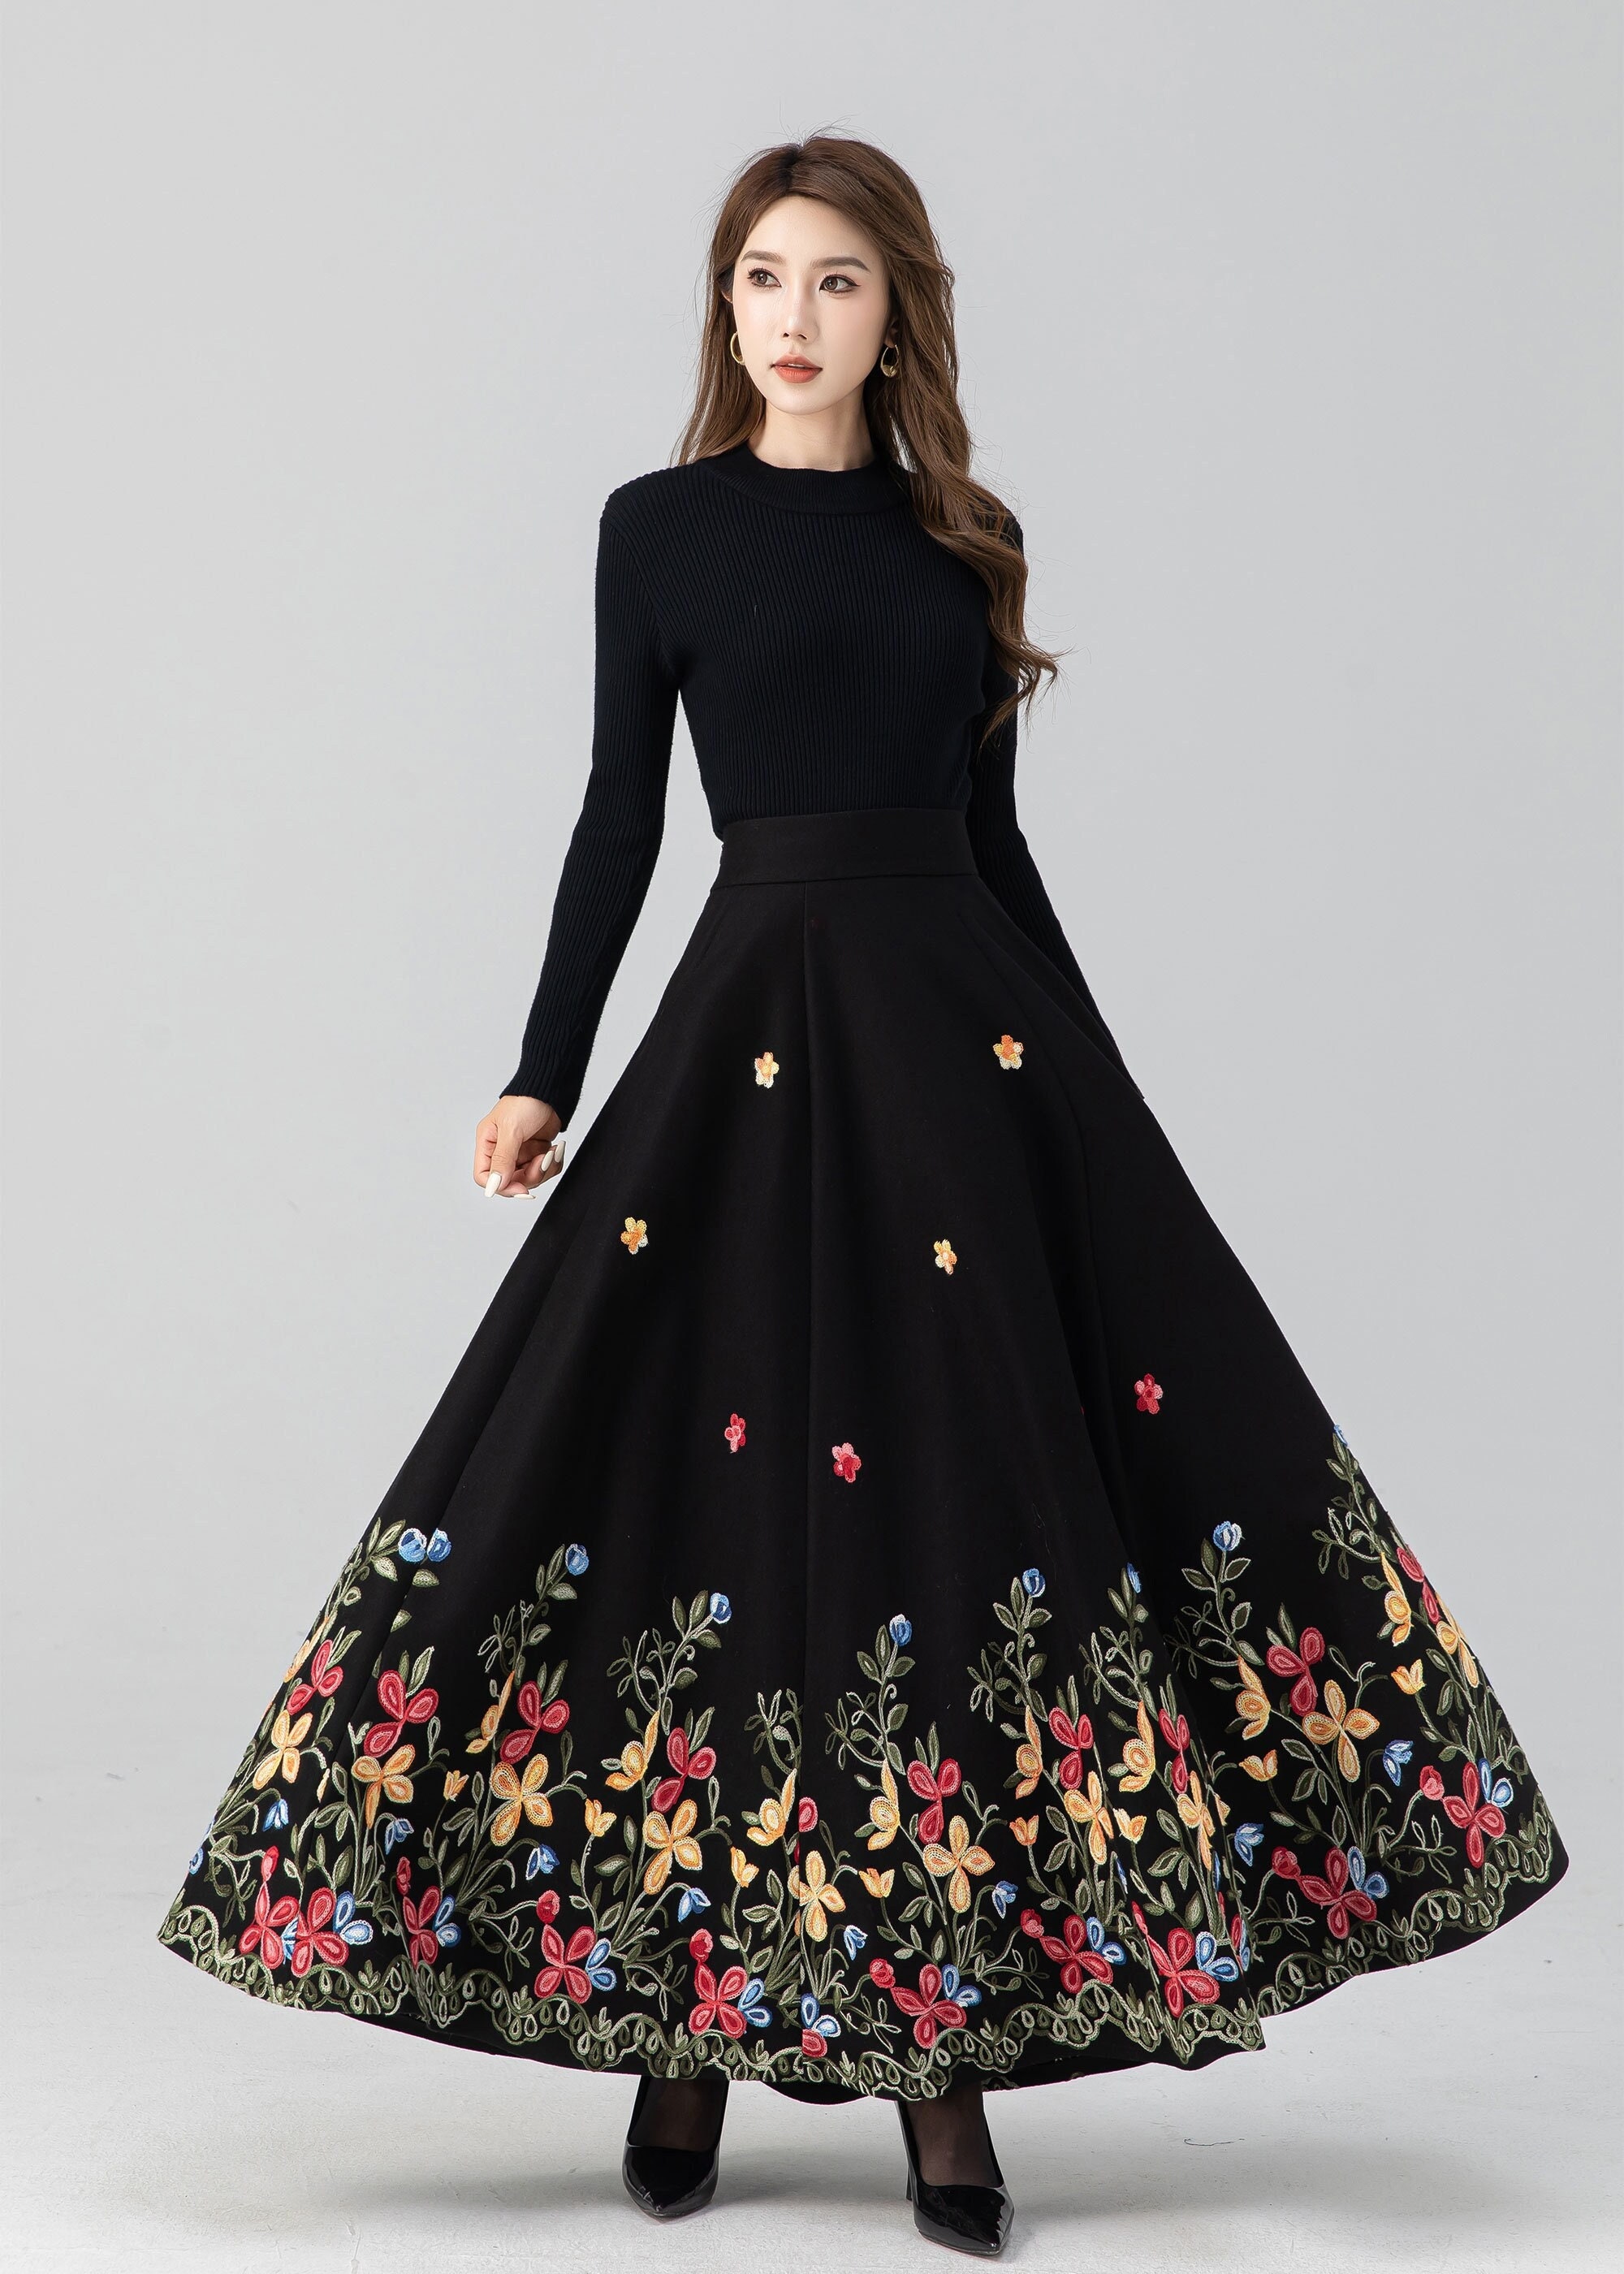 pleated A line wool Skirt in Black 1087# – XiaoLizi